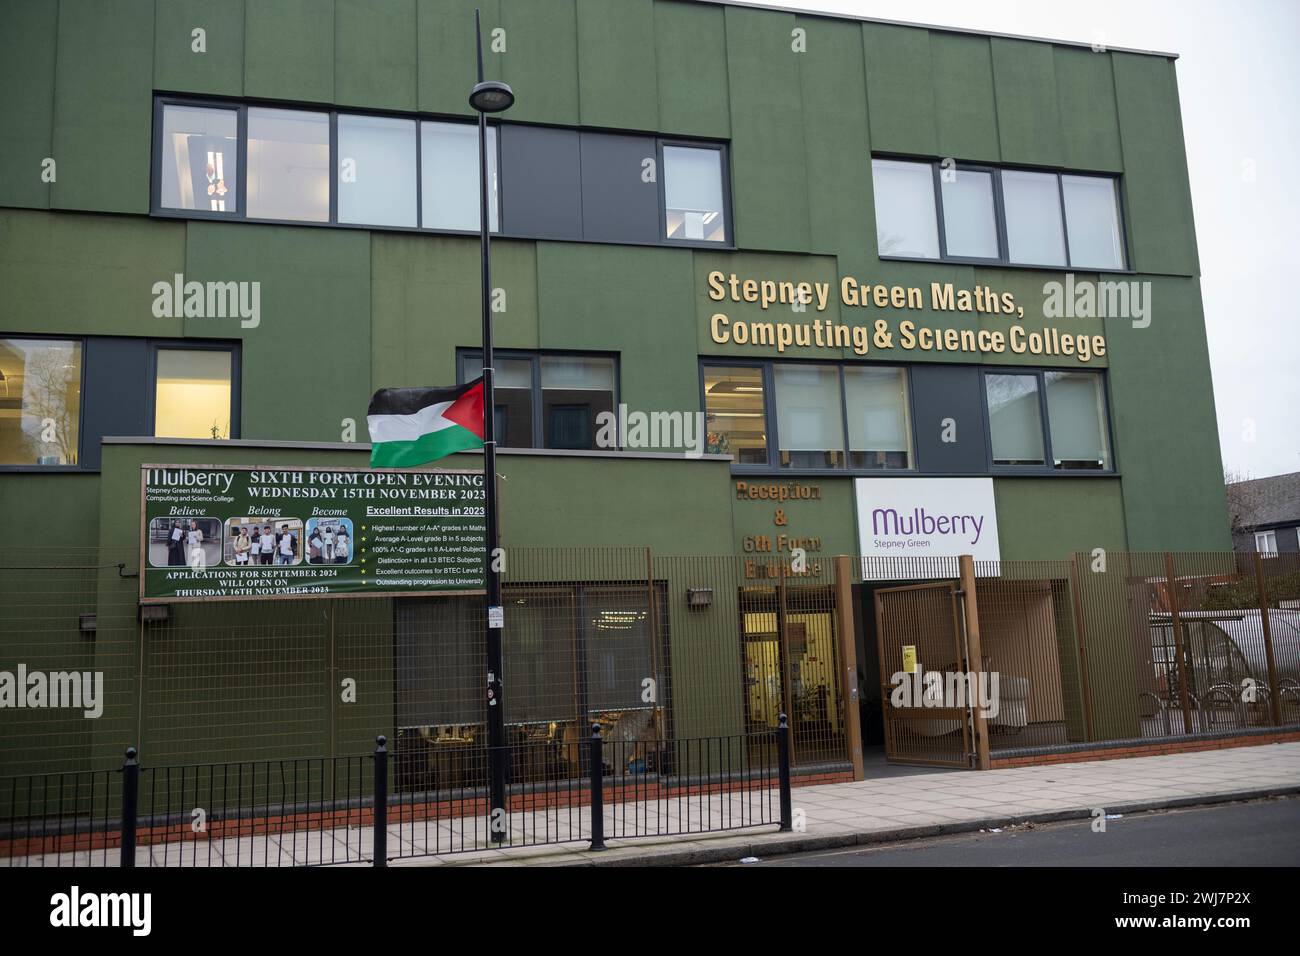 Mulberry Stepney Green Maths Computing and Science College Sixth Form, wo Prop Palestine Flaggen direkt vor dem Eingang in London gehängt wurden Stockfoto